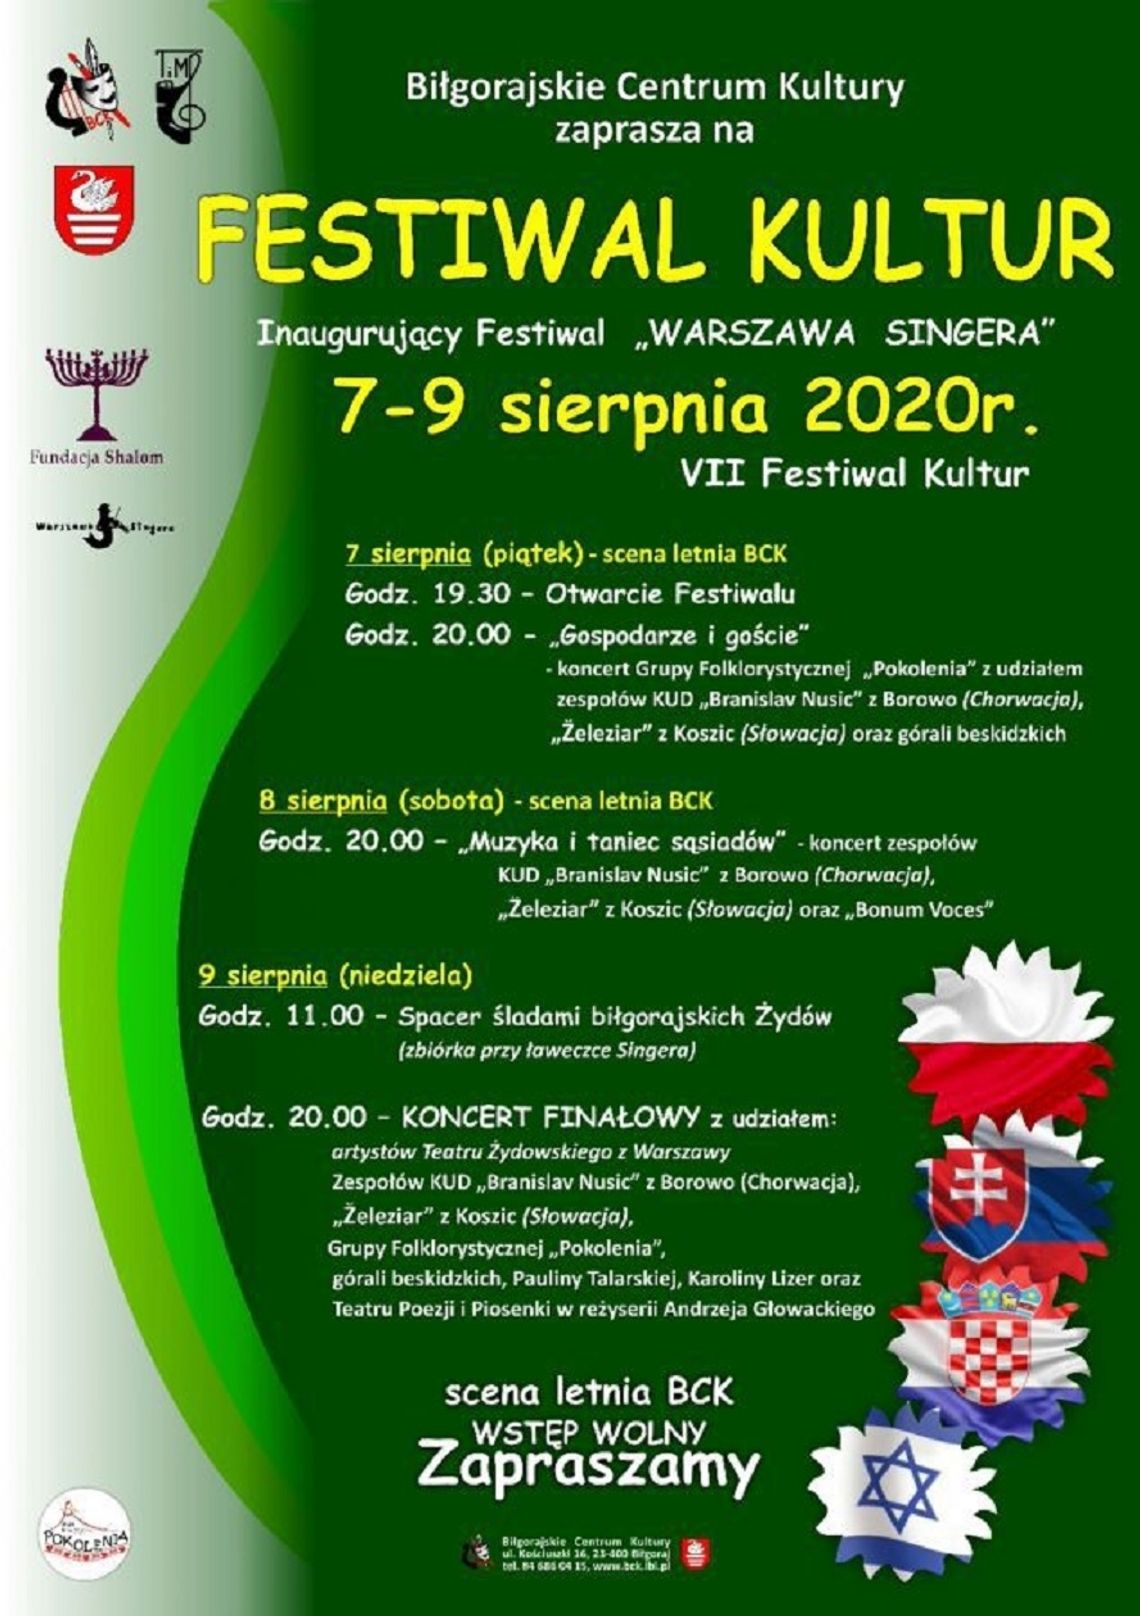 Biłgoraj: Festiwal Kultur - trzy dni znakomitej zabawy